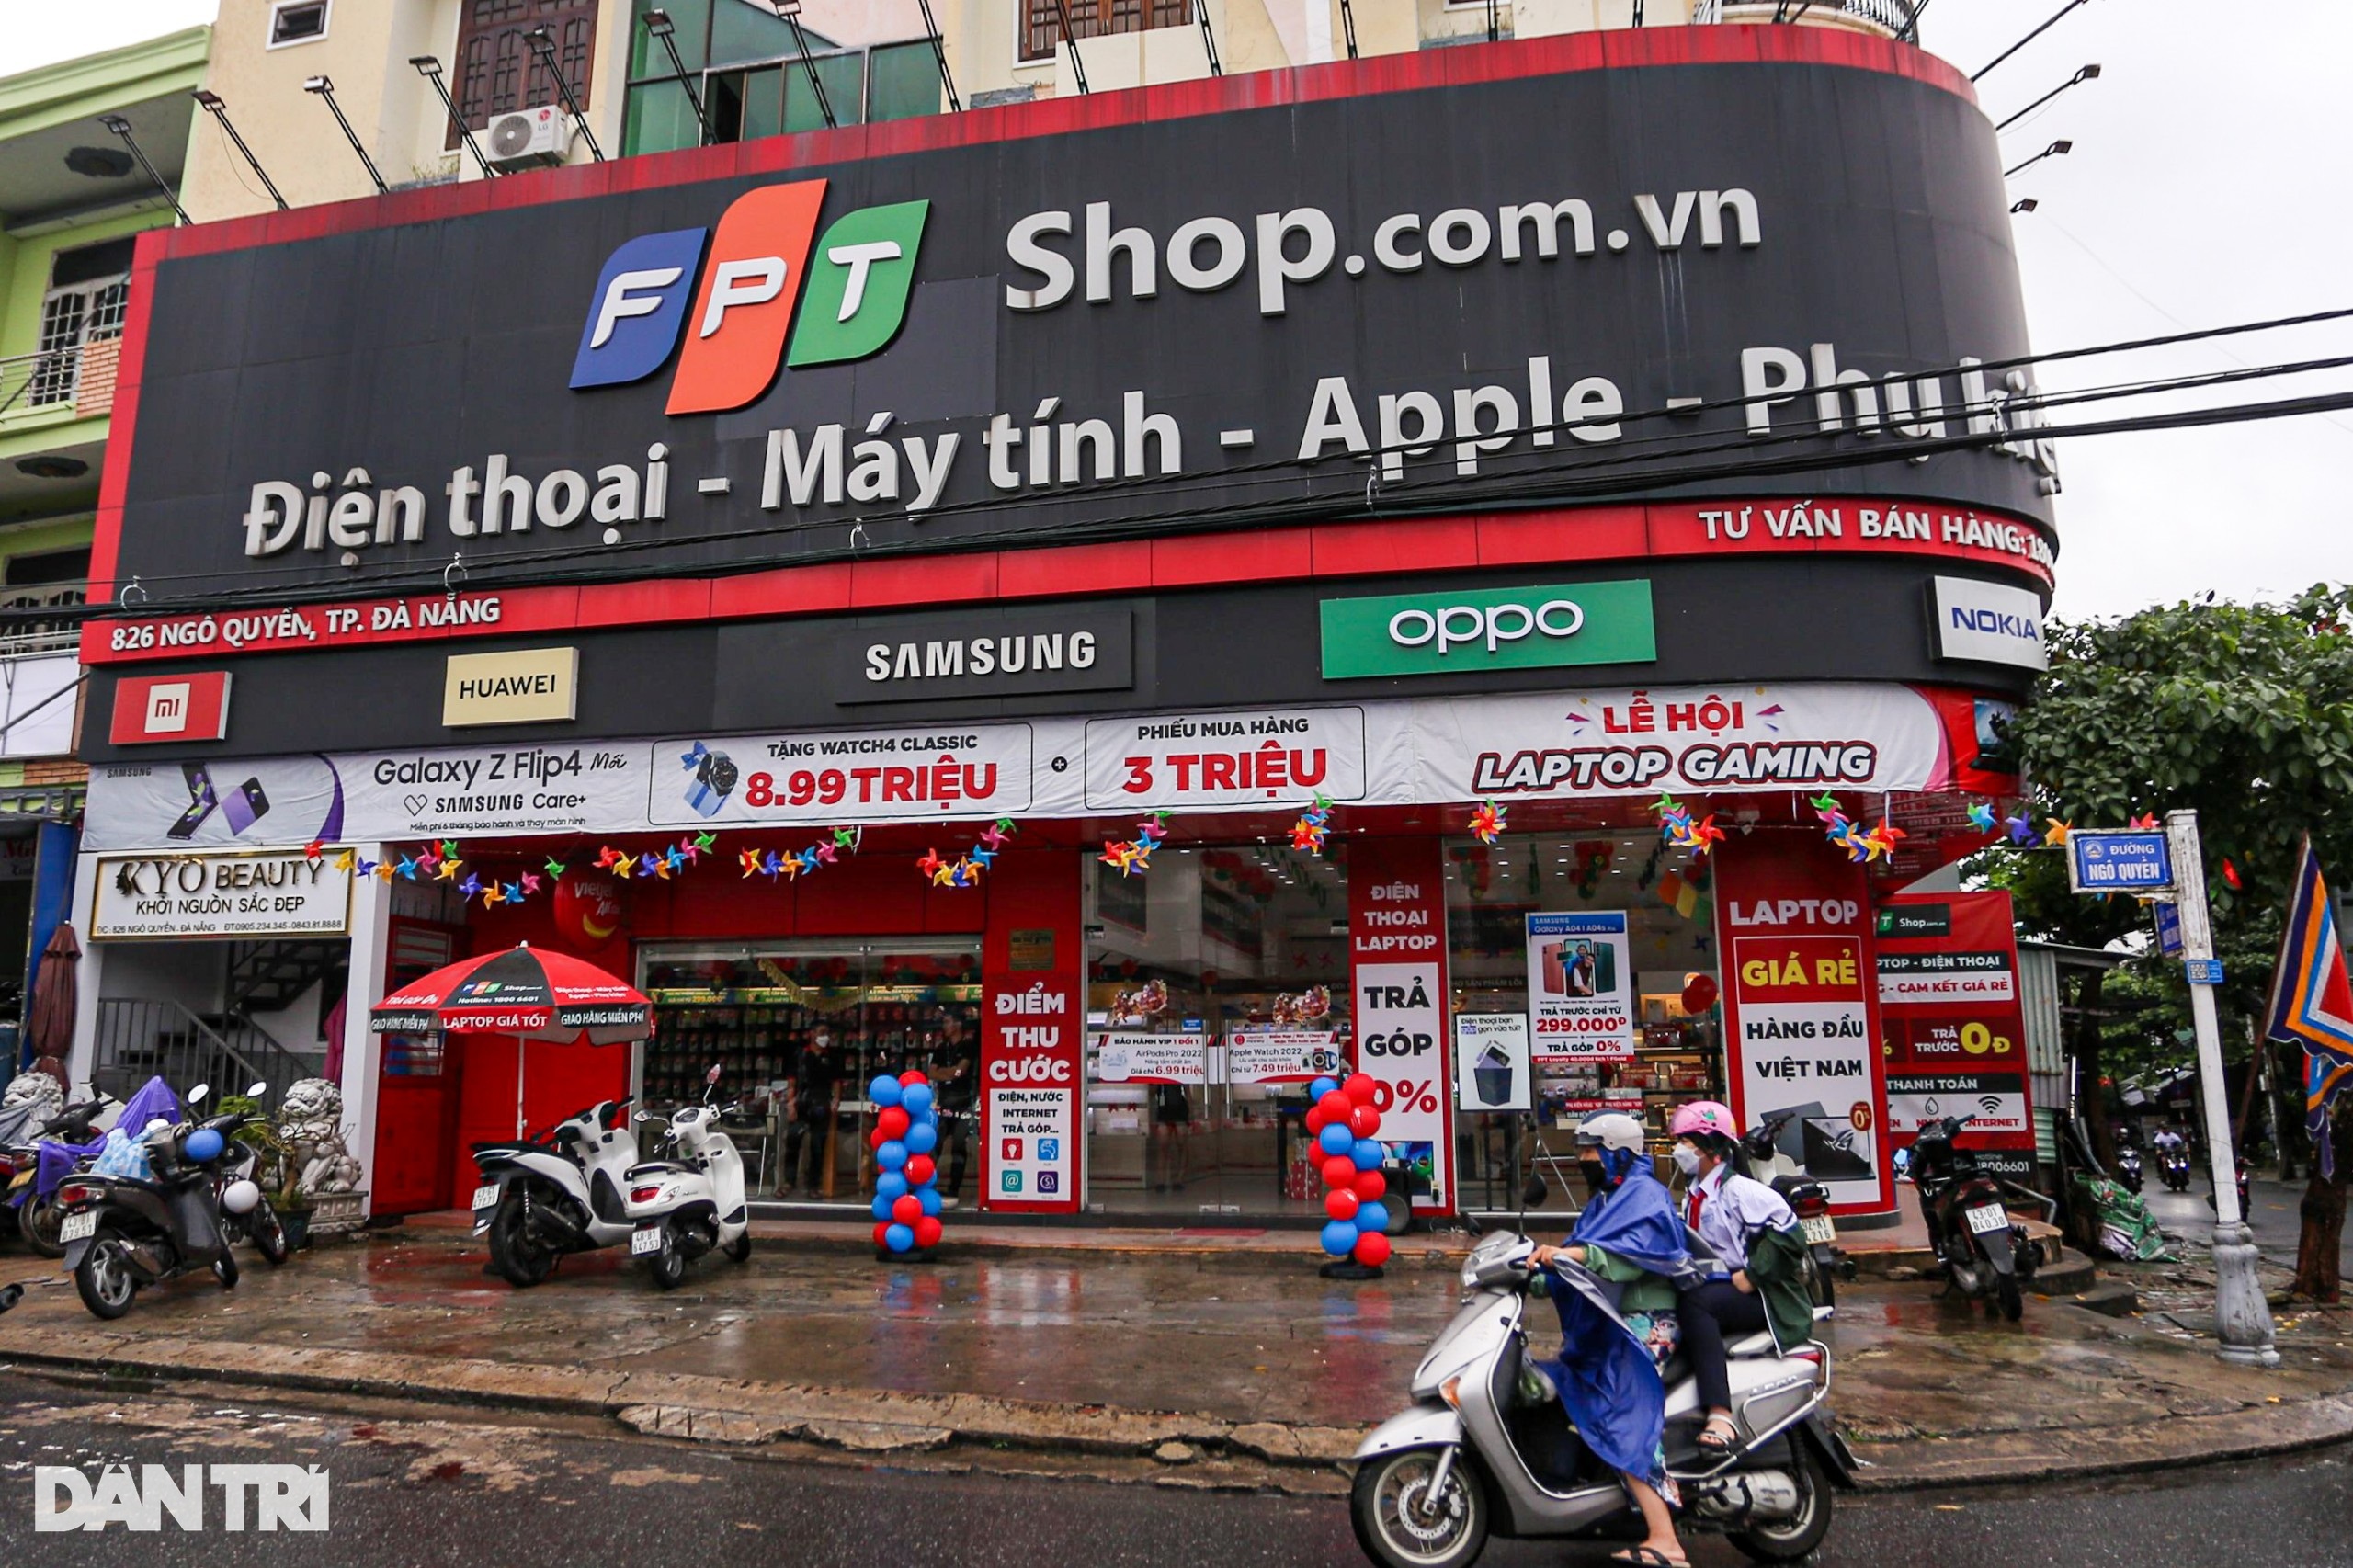 Trộm đột nhập, phá két sắt cửa hàng điện thoại, máy tính ở Đà Nẵng - 1